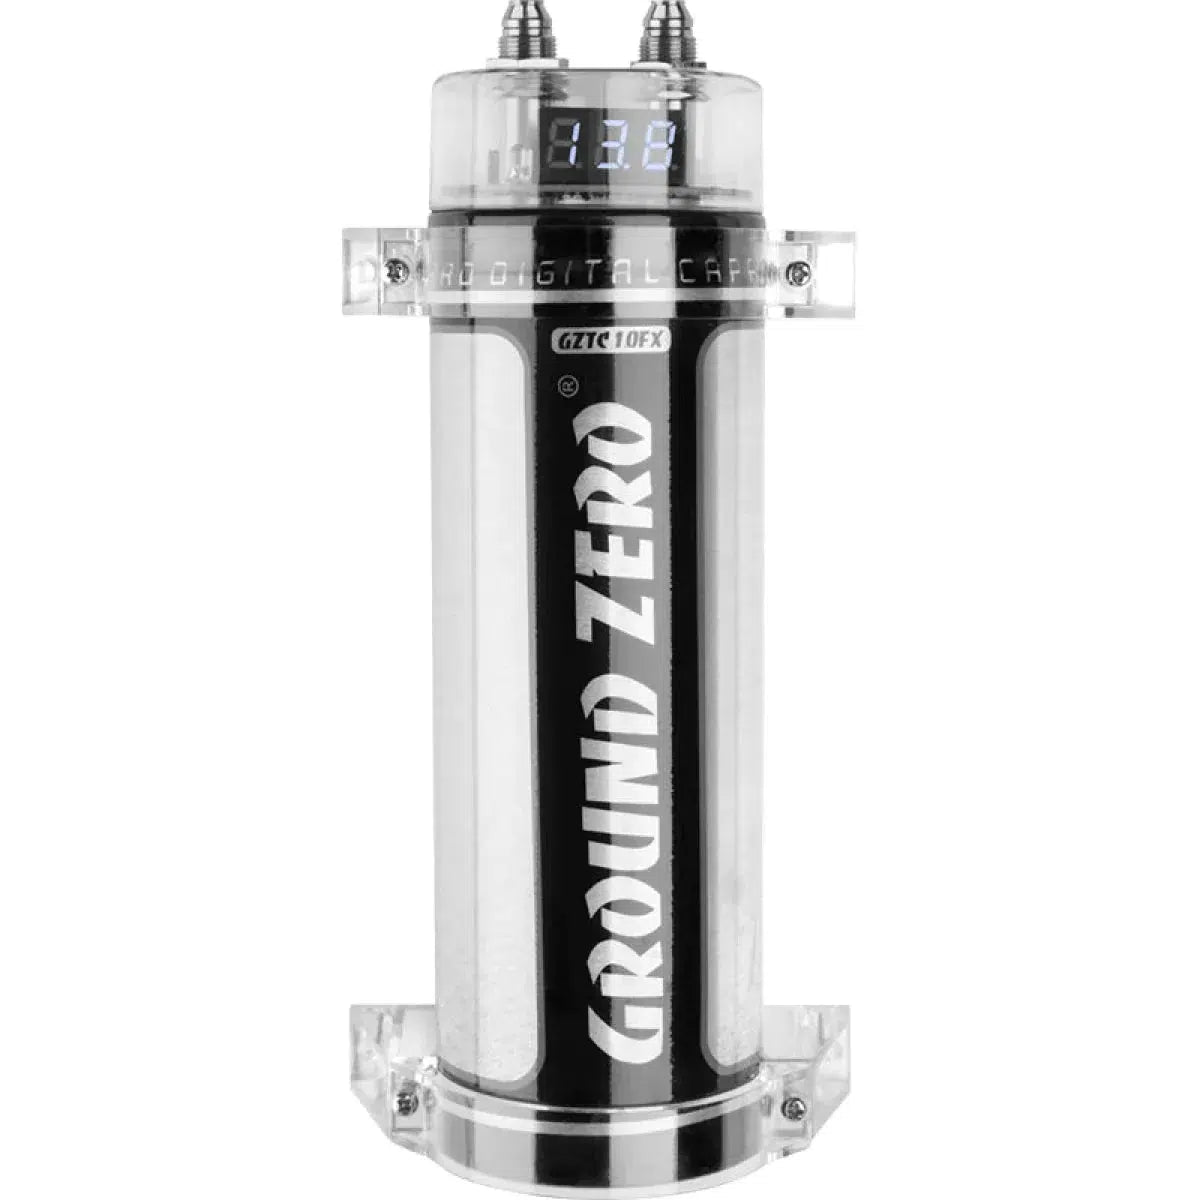 Ground Zero-Titanium GZTC 1.0FX - 1 Farad Condensateur-Masori.fr